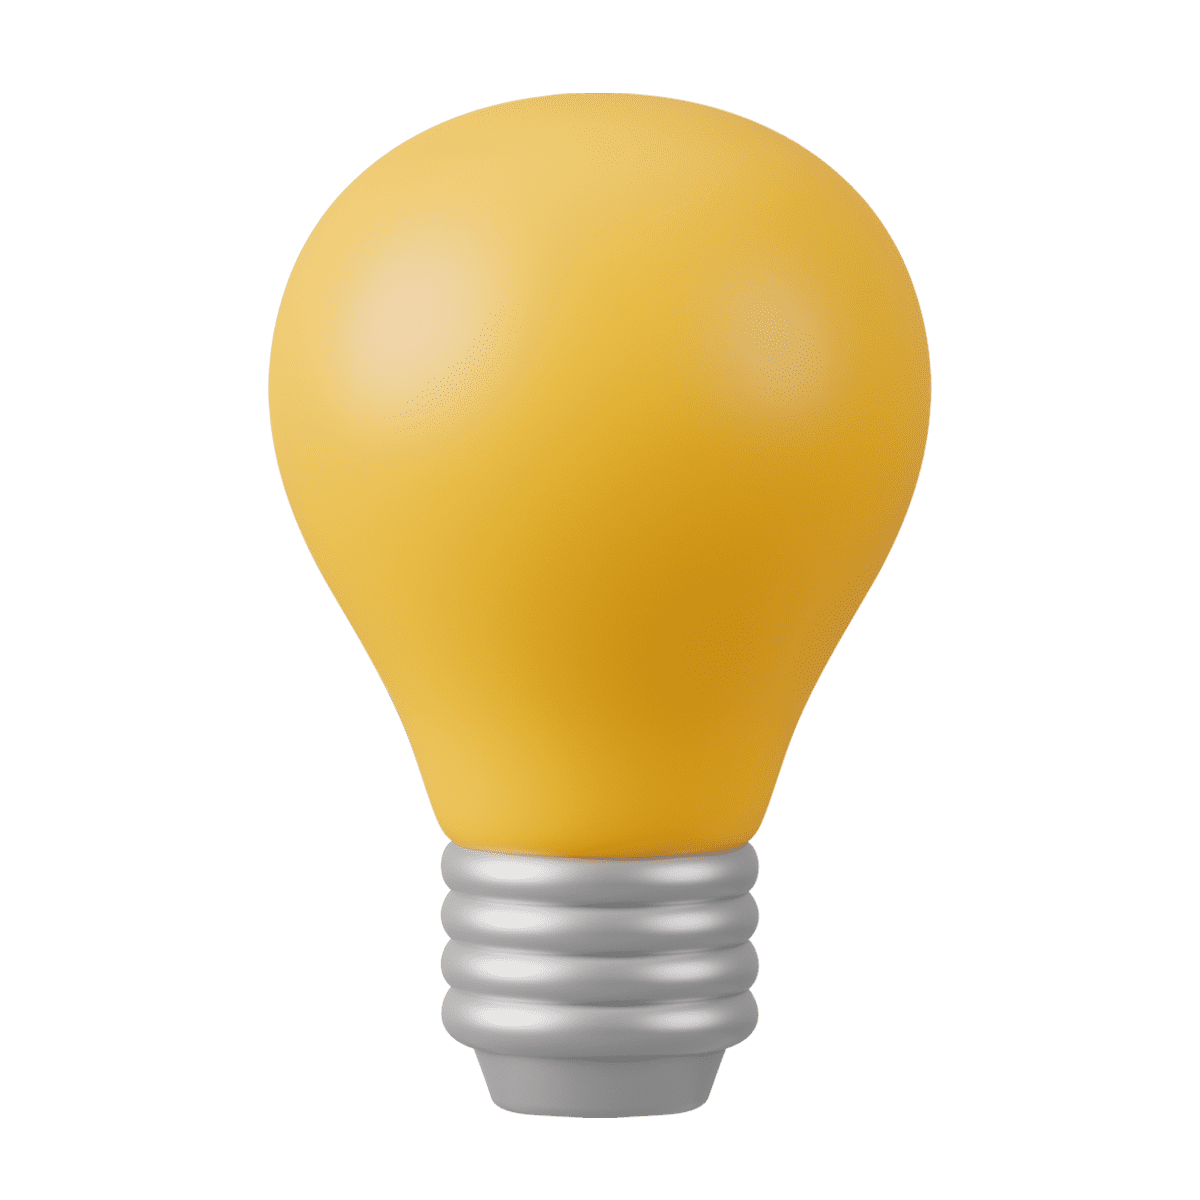 lightbulb (1) (1)